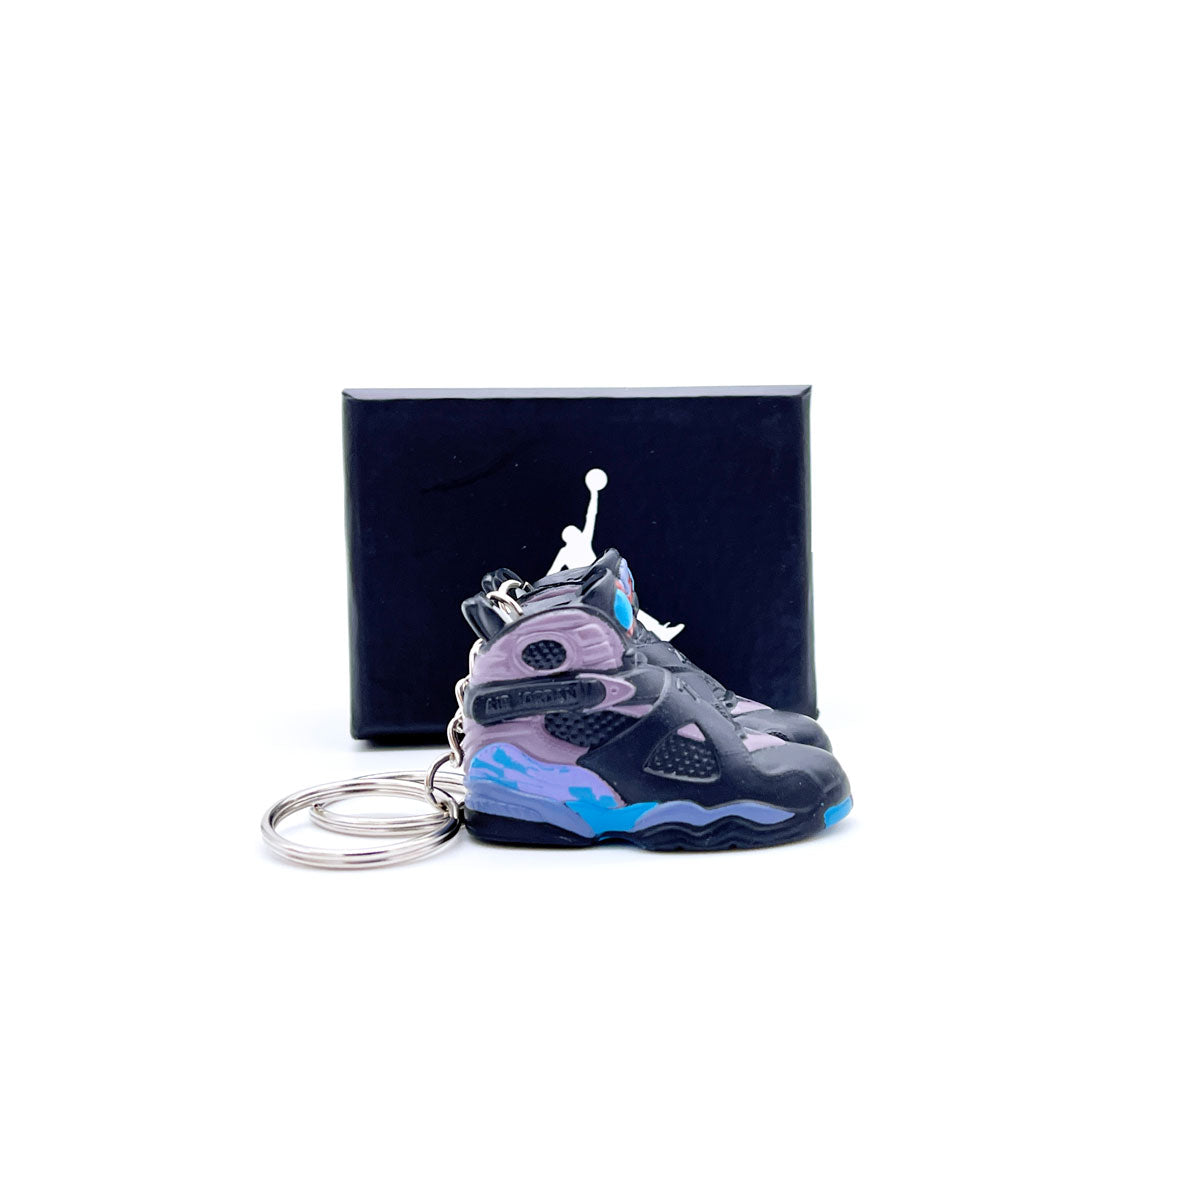 3D Sneaker Keychain- Air Jordan 8 Aqua Pair - KickzStore